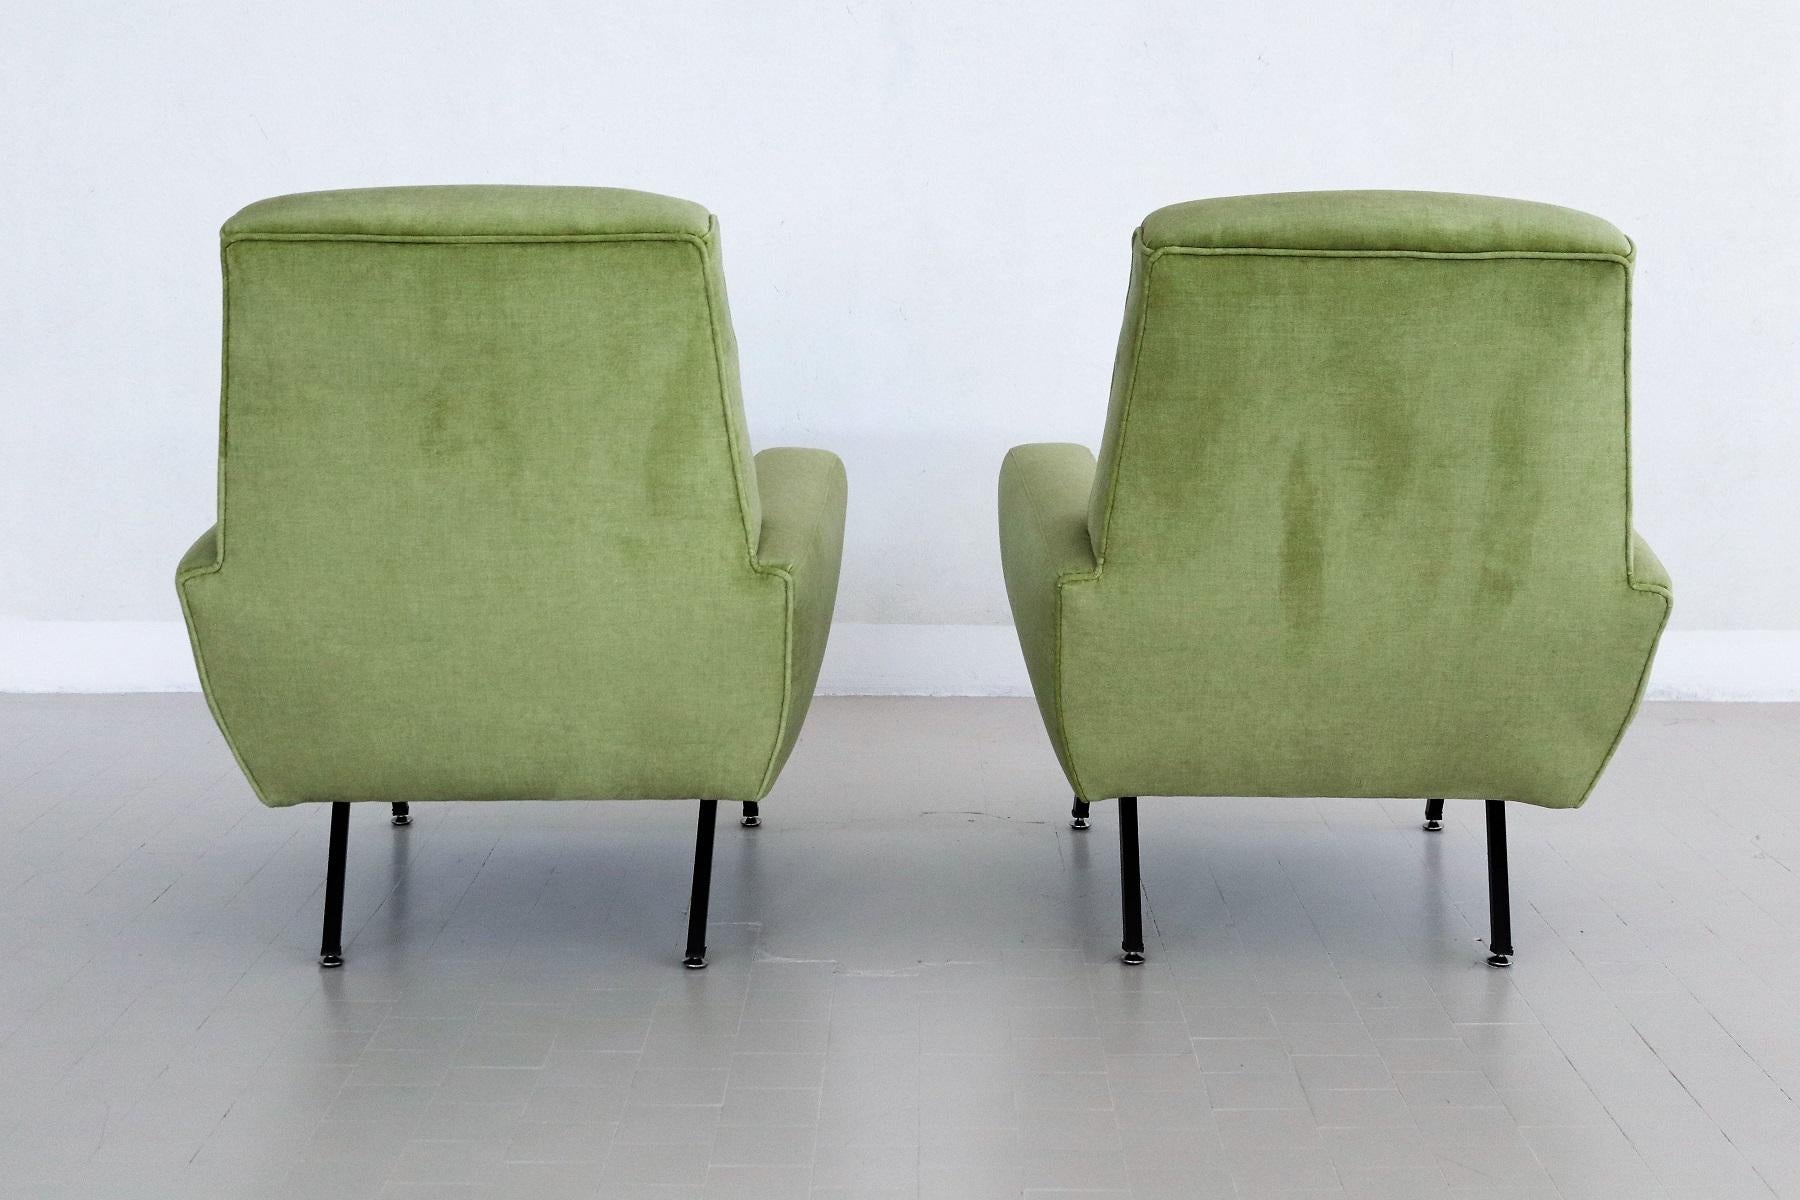 Italian Midcentury Armchairs Re-Upholstered in Green Velvet, 1960s For Sale 4